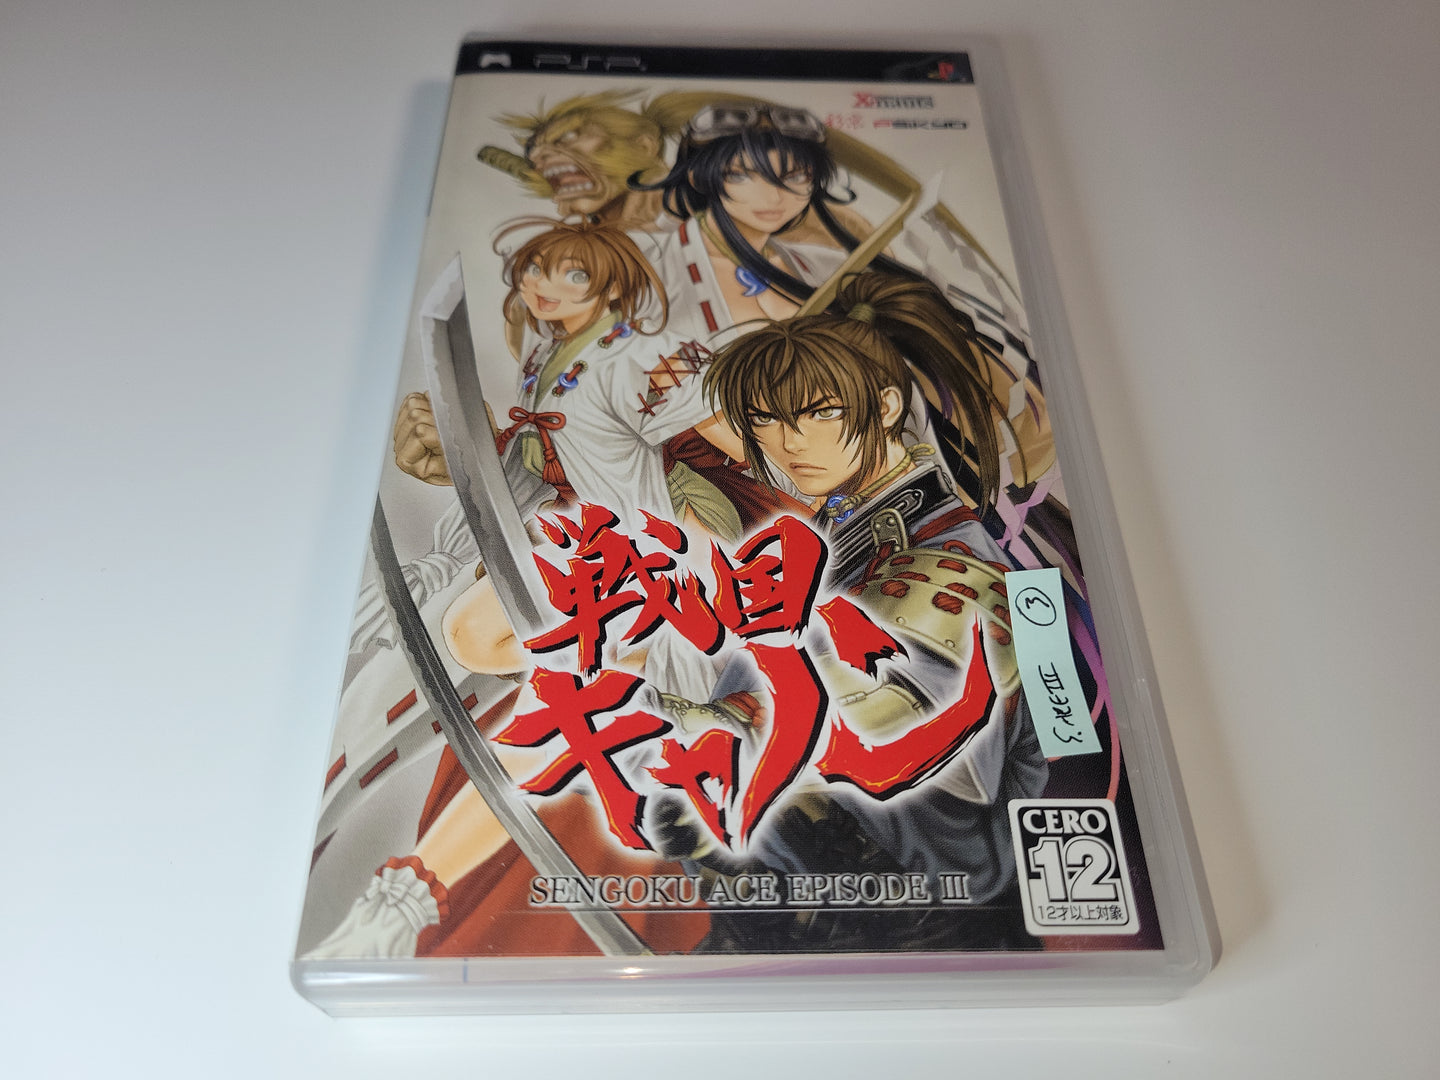 Sengoku Cannon ~ Sengoku Ace Episode III - Sony PSP Playstation Portable